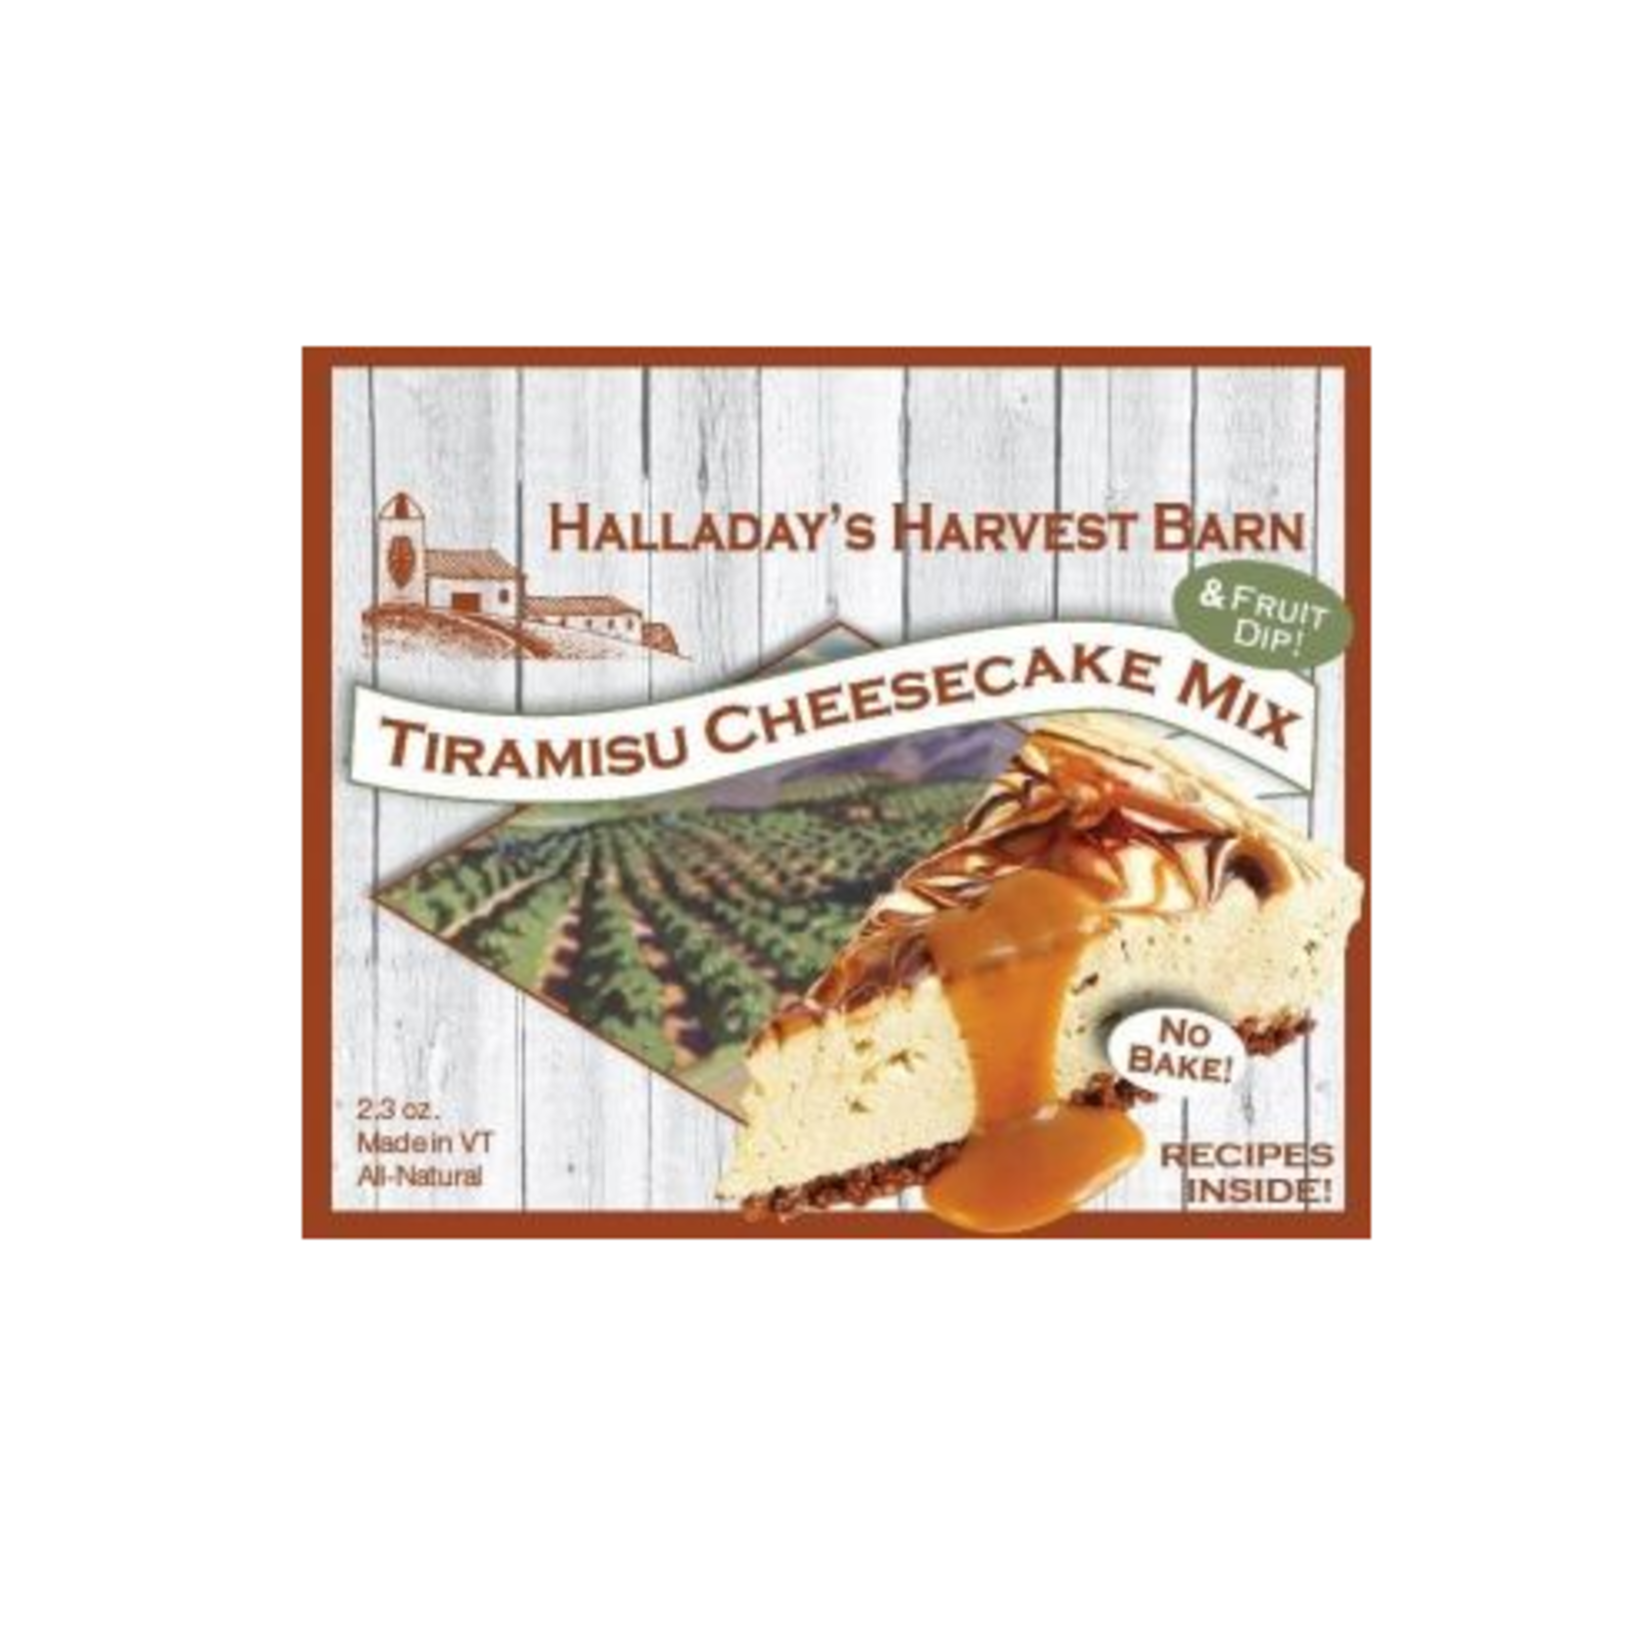 Halladay's Harvest Barn Tiramisu Cheesecake Mix